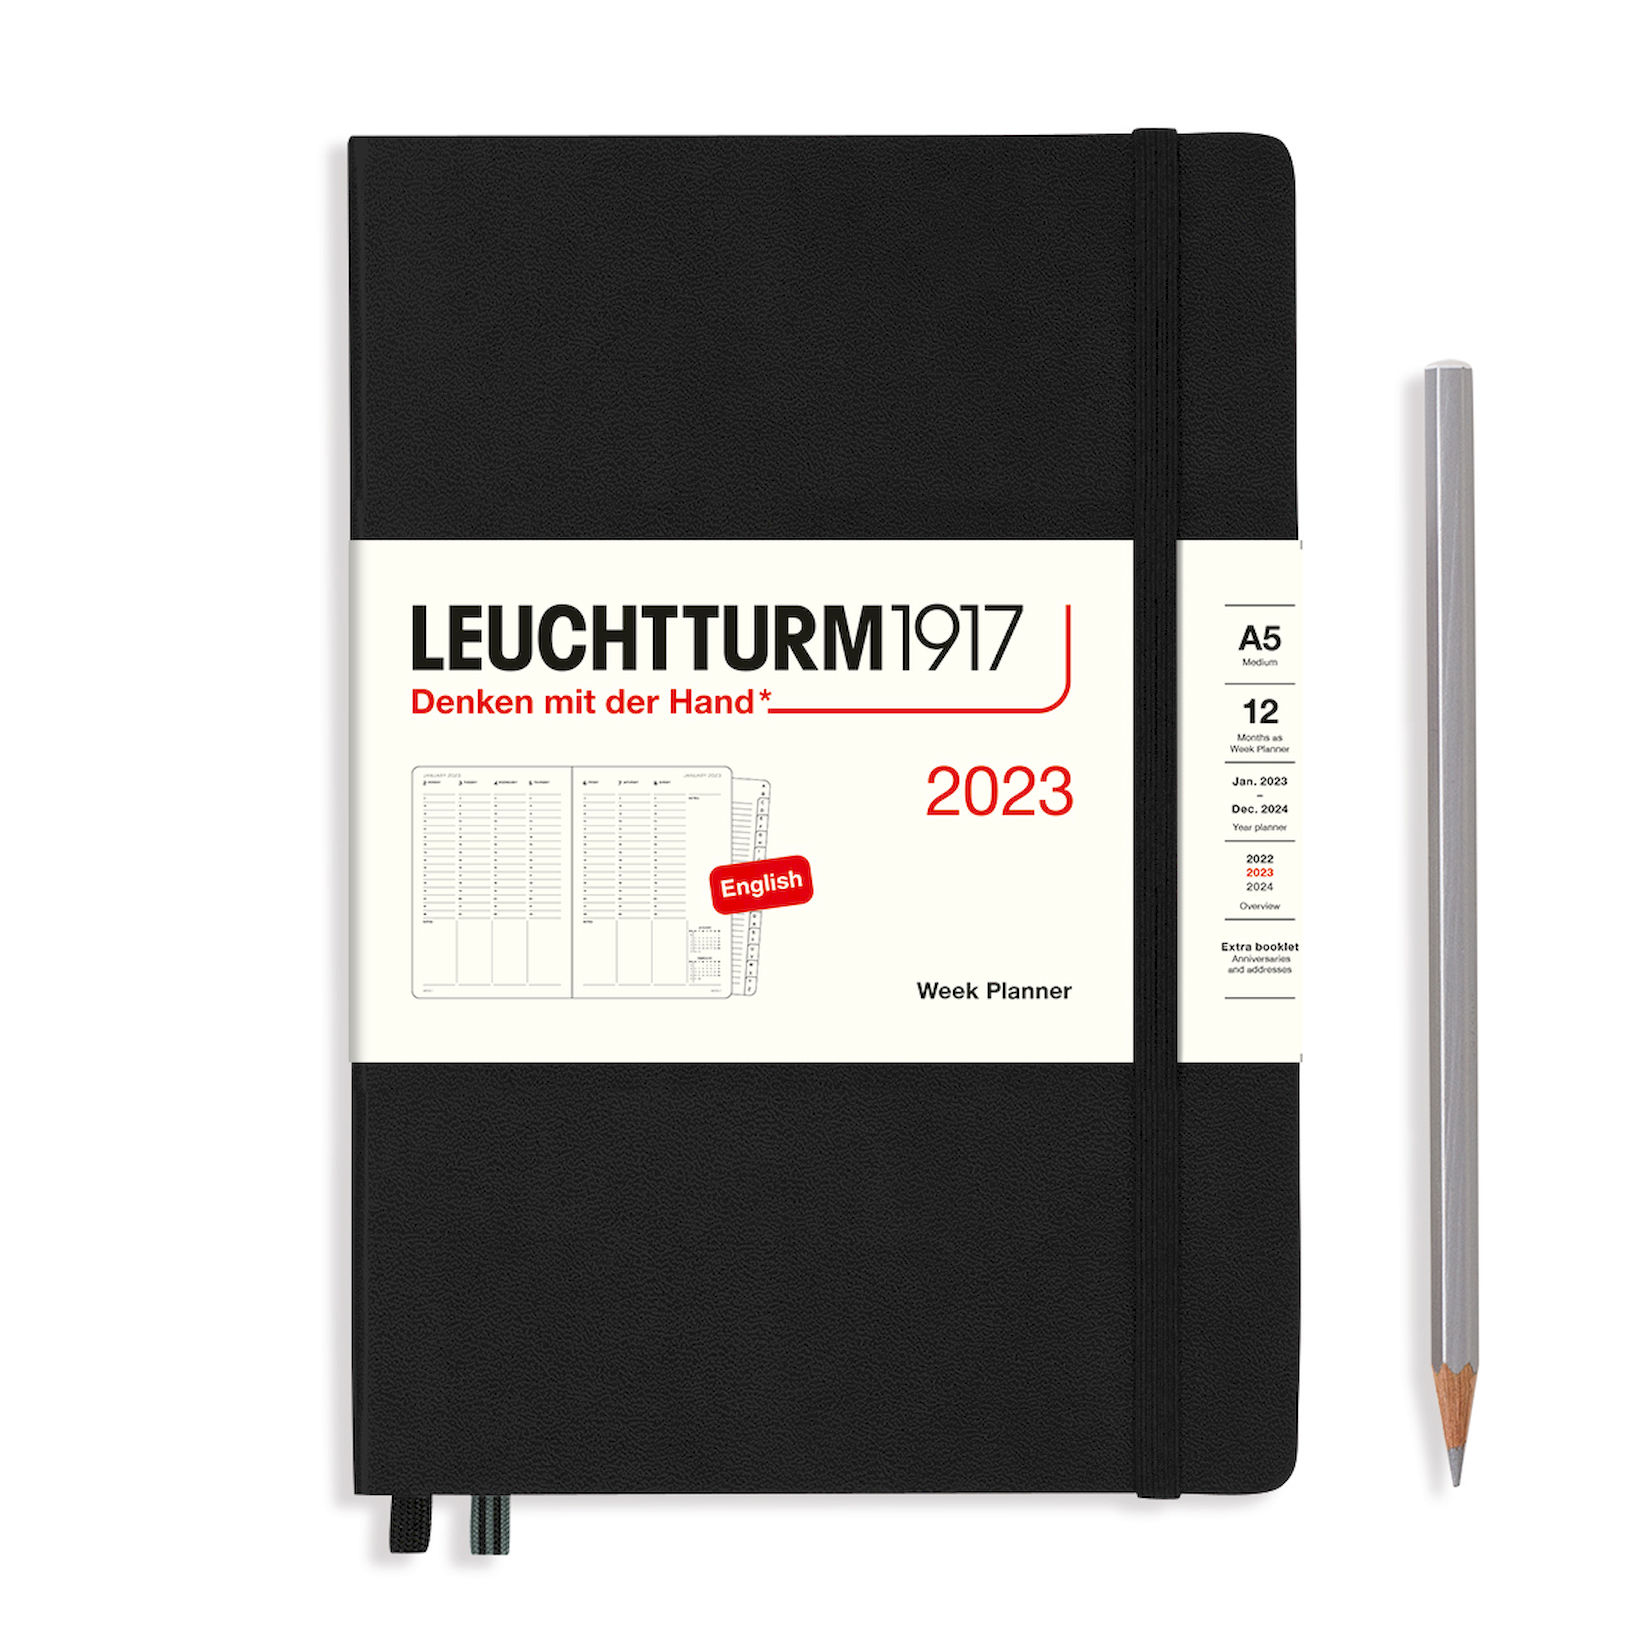  - Еженедельник Leuchtturm1917 Medium (A5) на 2023г дни с расписанием твердая обложка Черный + алфавитная записная книжка